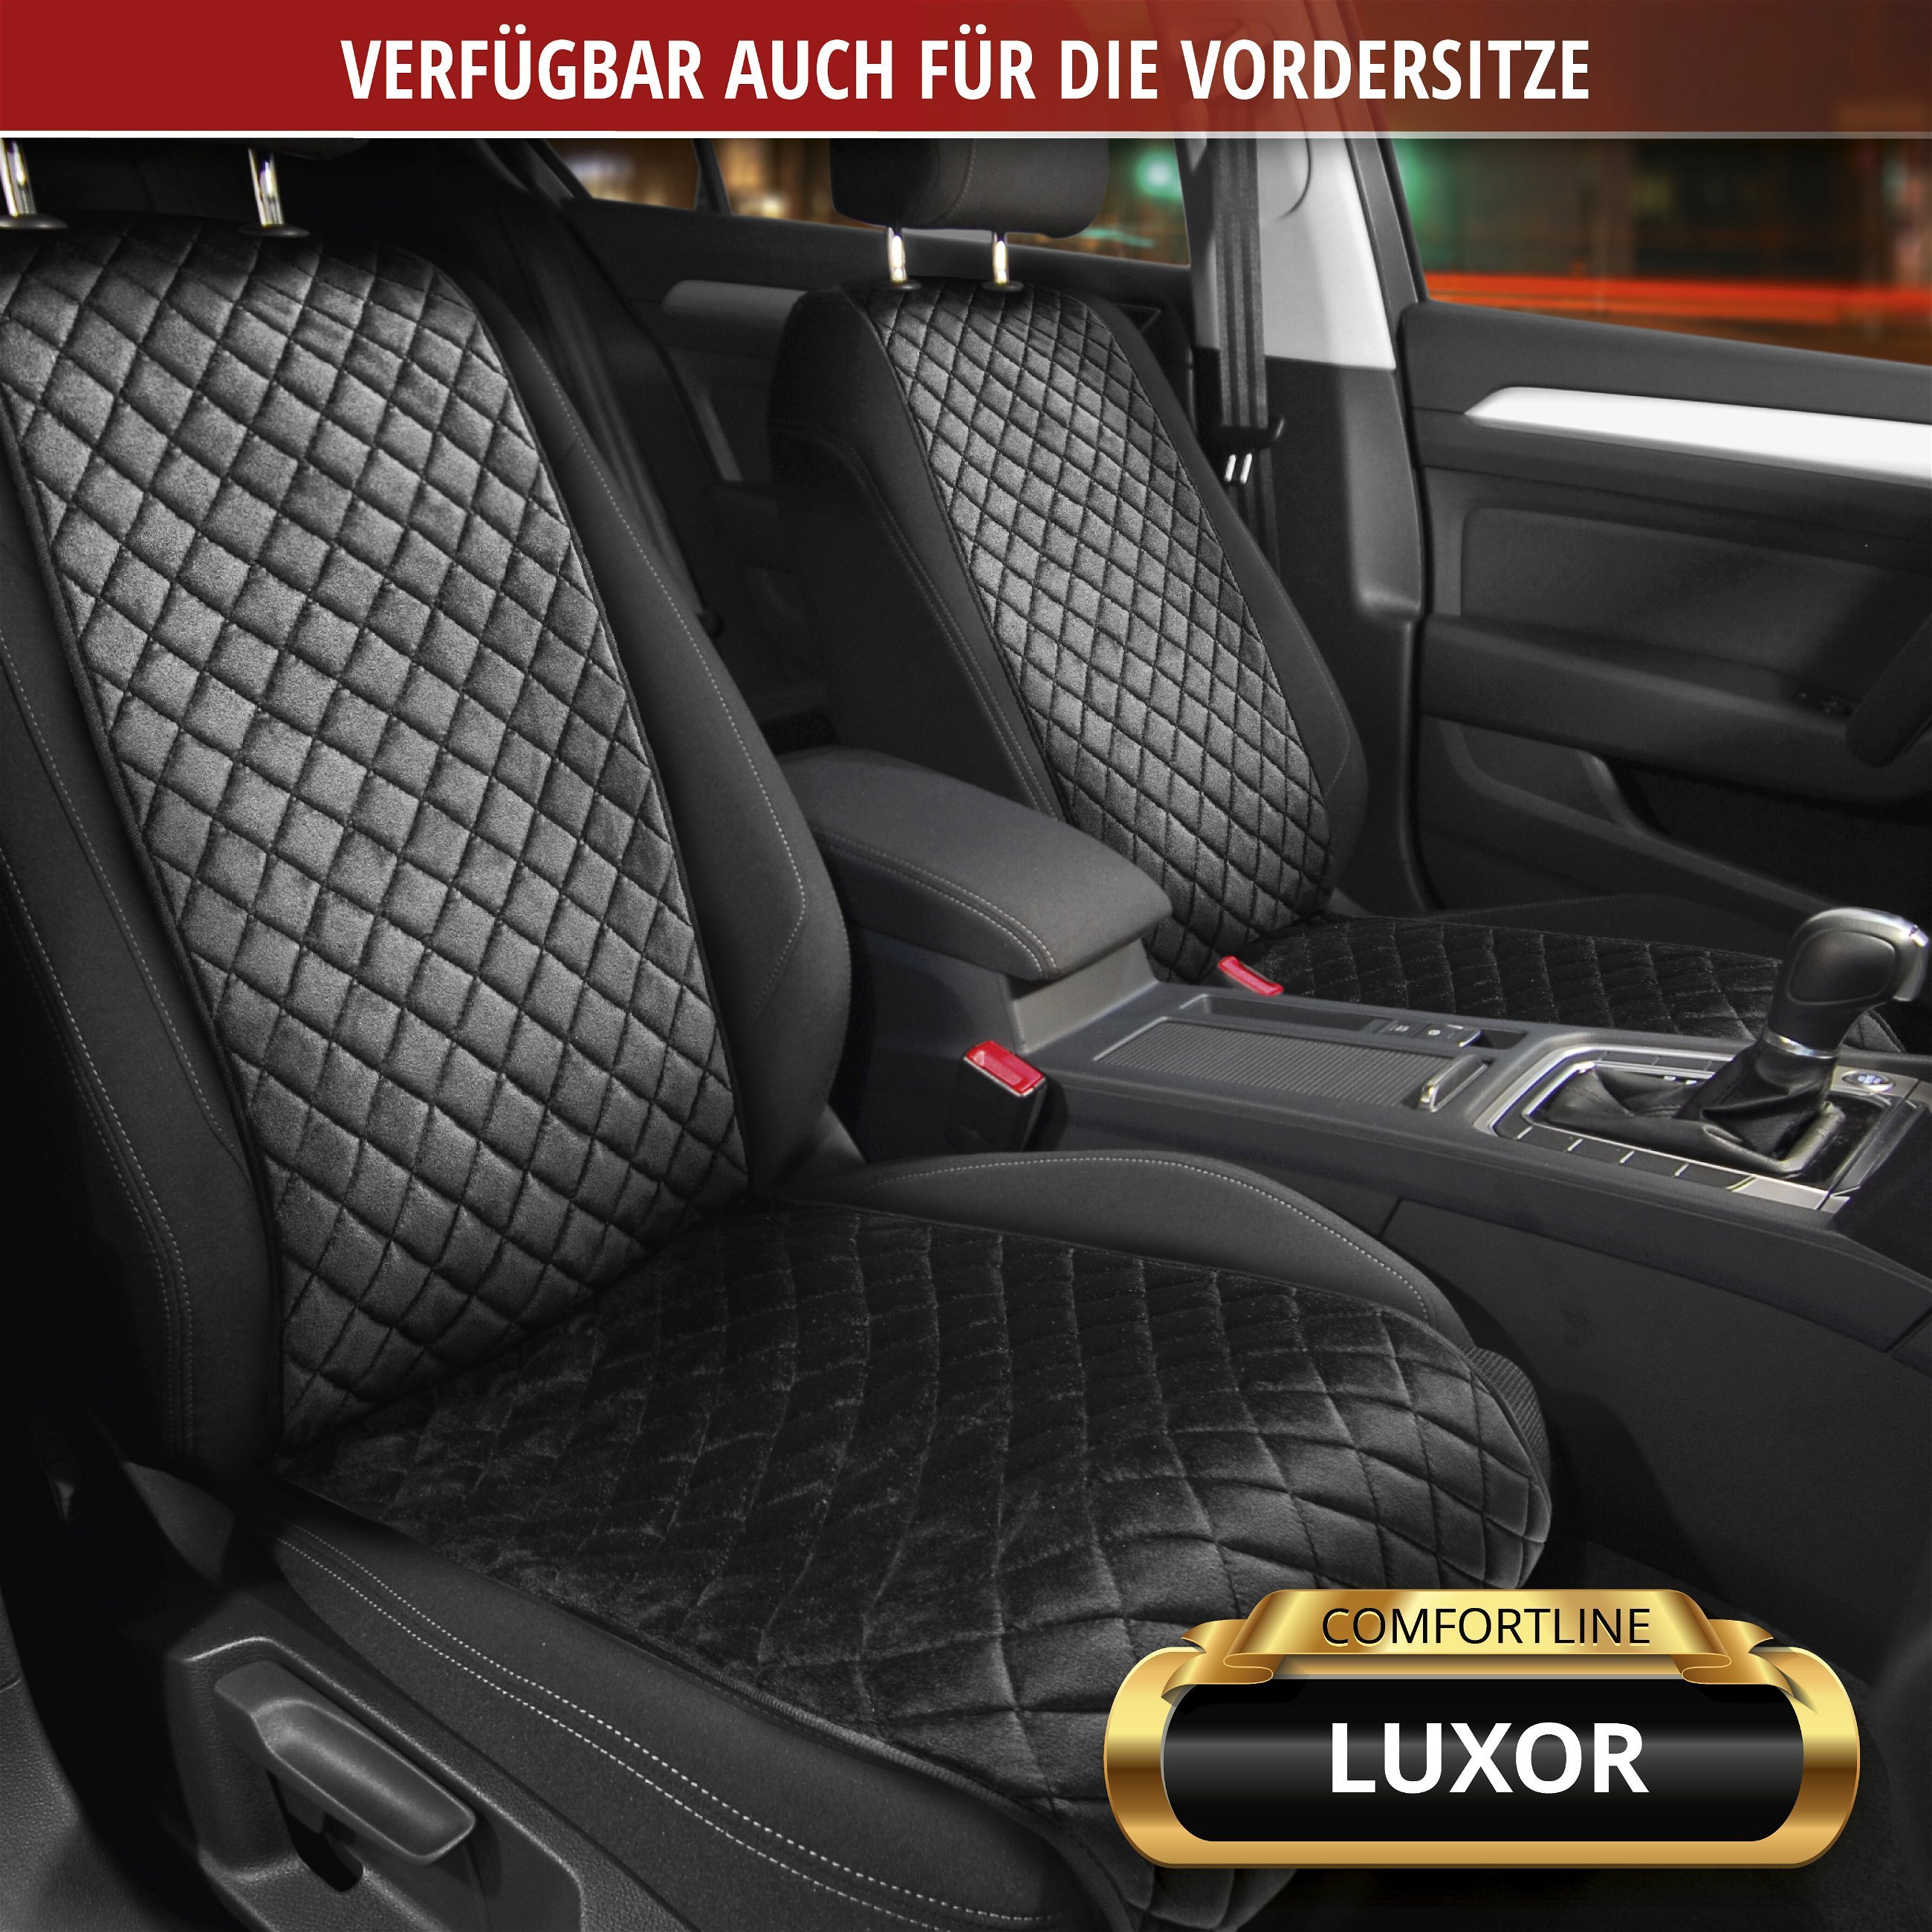 PKW-Sitzaufleger Comfortline Luxor inkl. Anti-Rutsch-Beschichtung, Auto-Sitzauflage für 1 Rücksitzbank